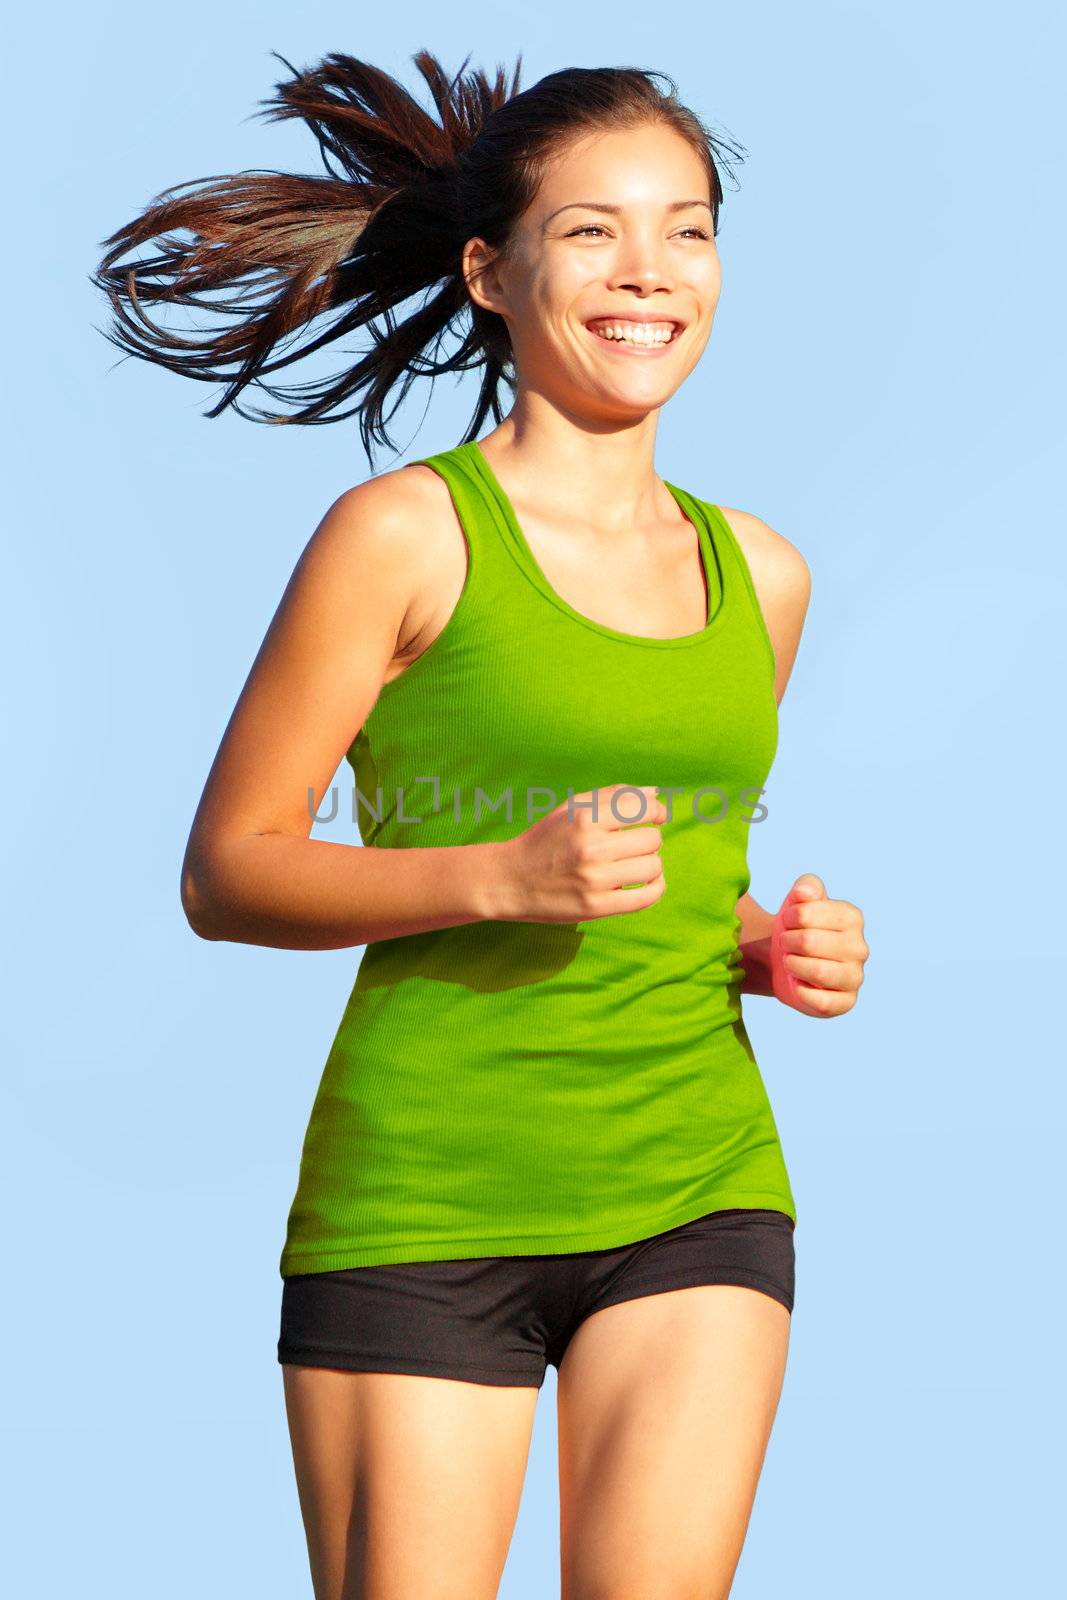 Running - Woman going for a run by Maridav